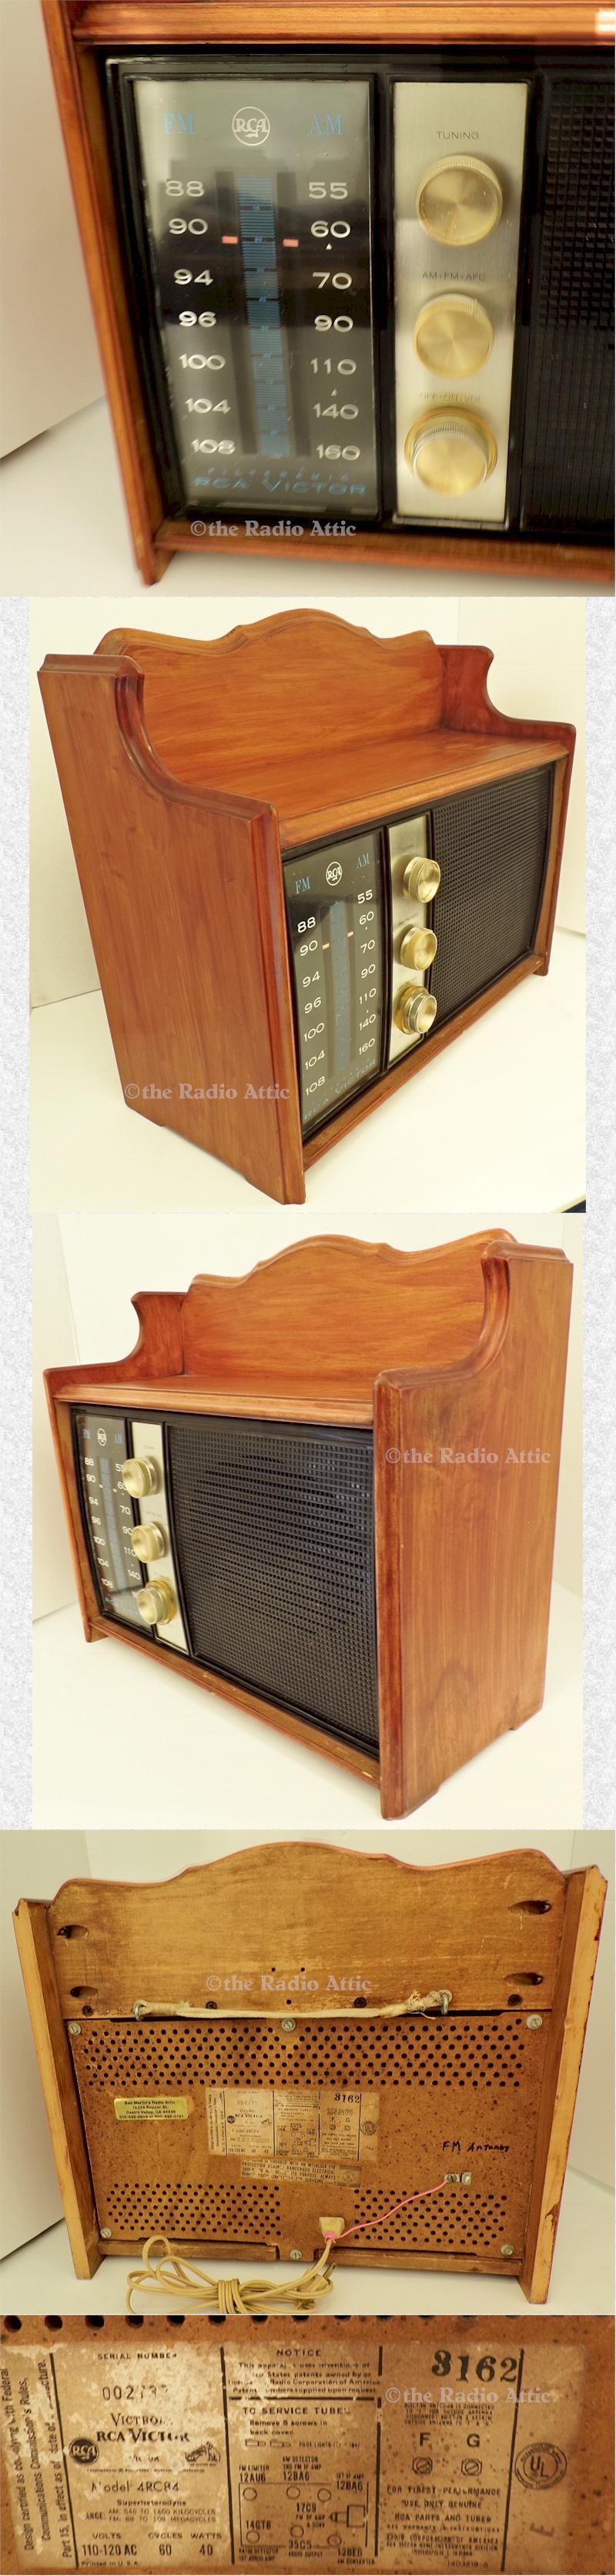 RCA 4RC84 Spice Rack Radio (1959-60's)